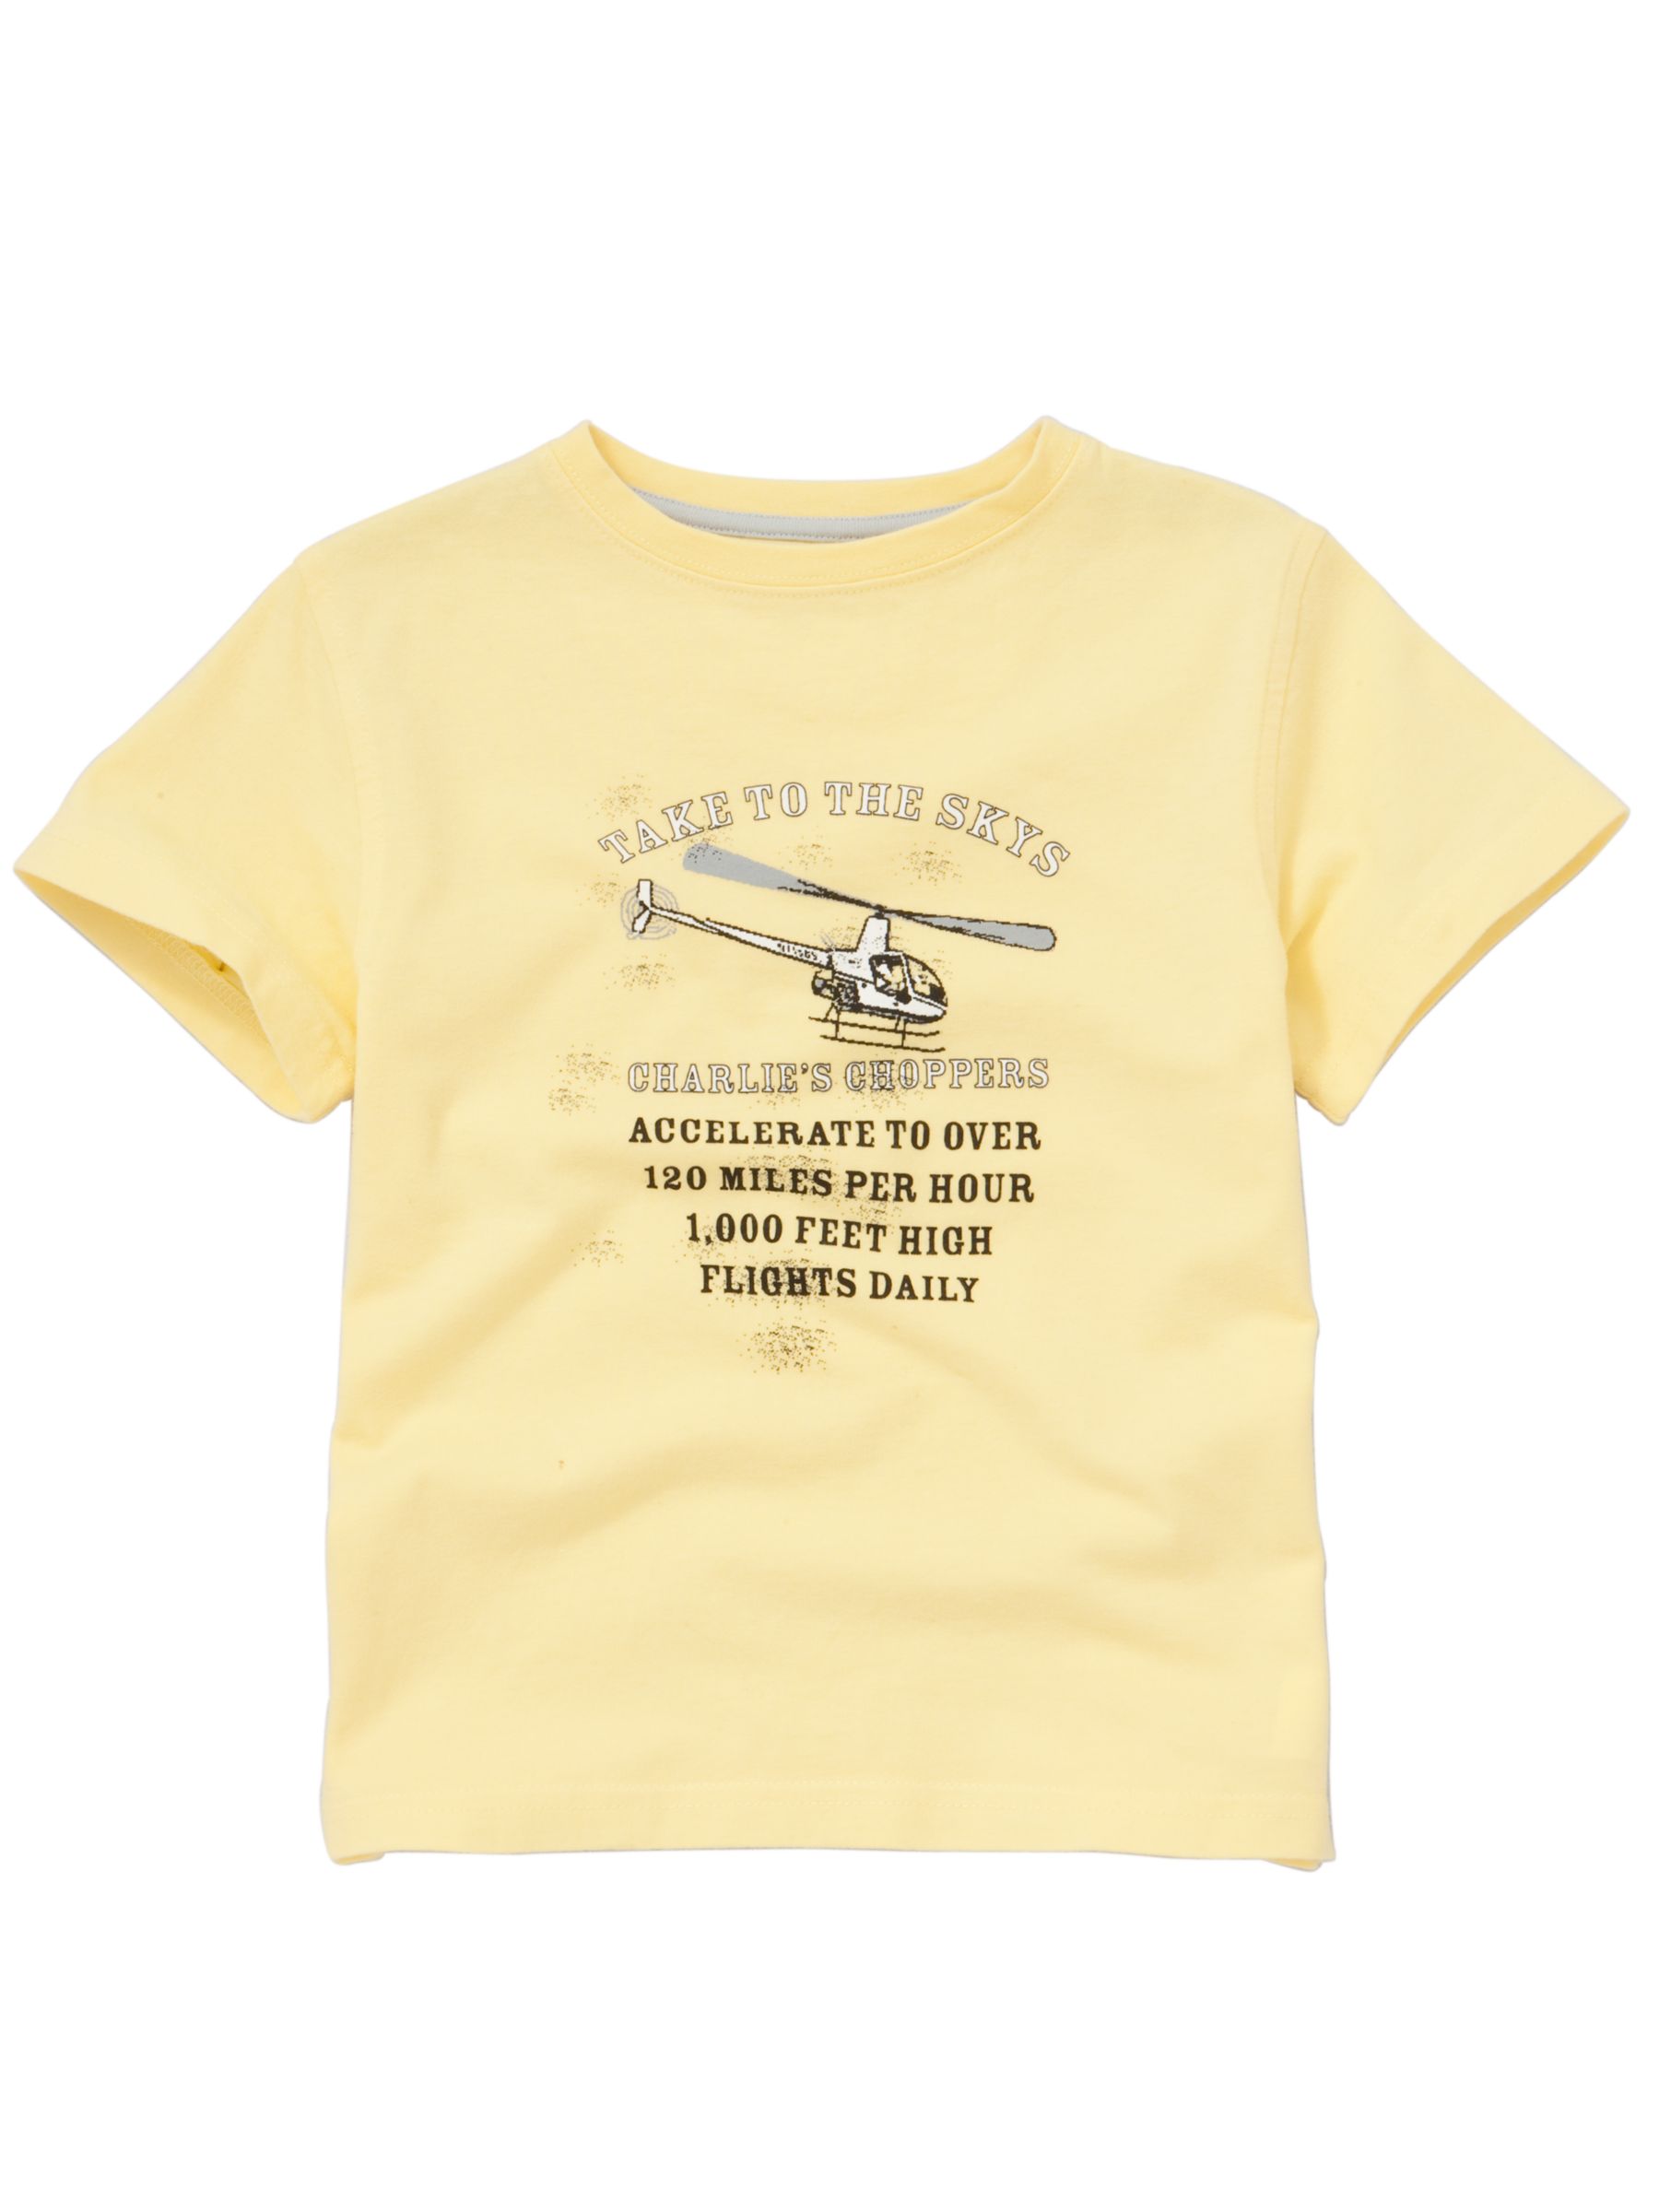 Plane Graphic T-Shirt, Yellow